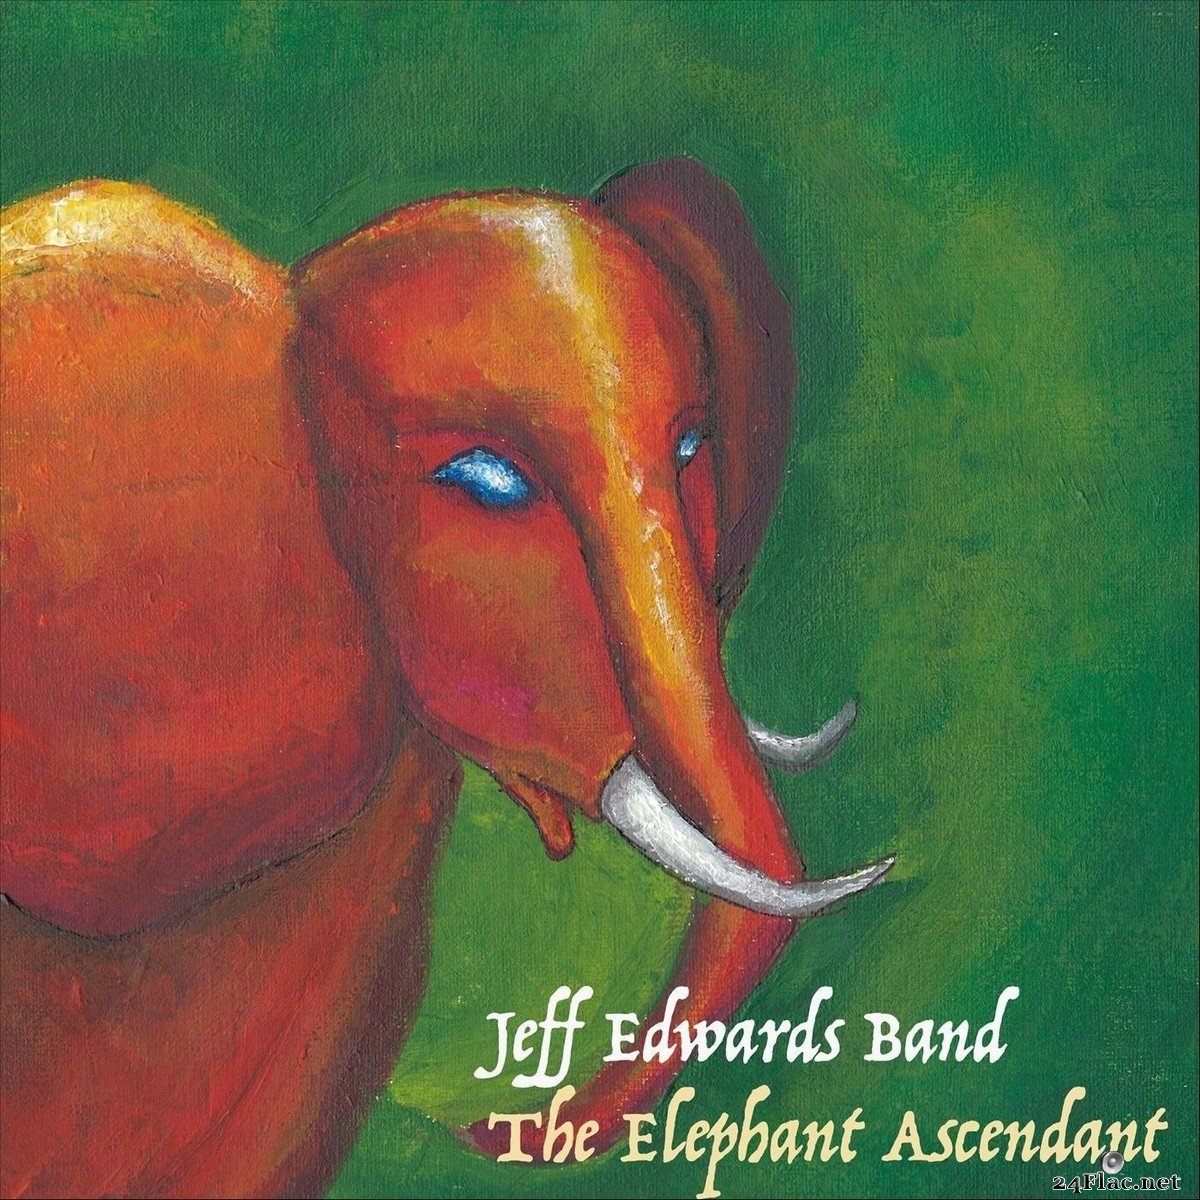 Jeff Edwards Band - The Elephant Ascendant (2021) FLAC